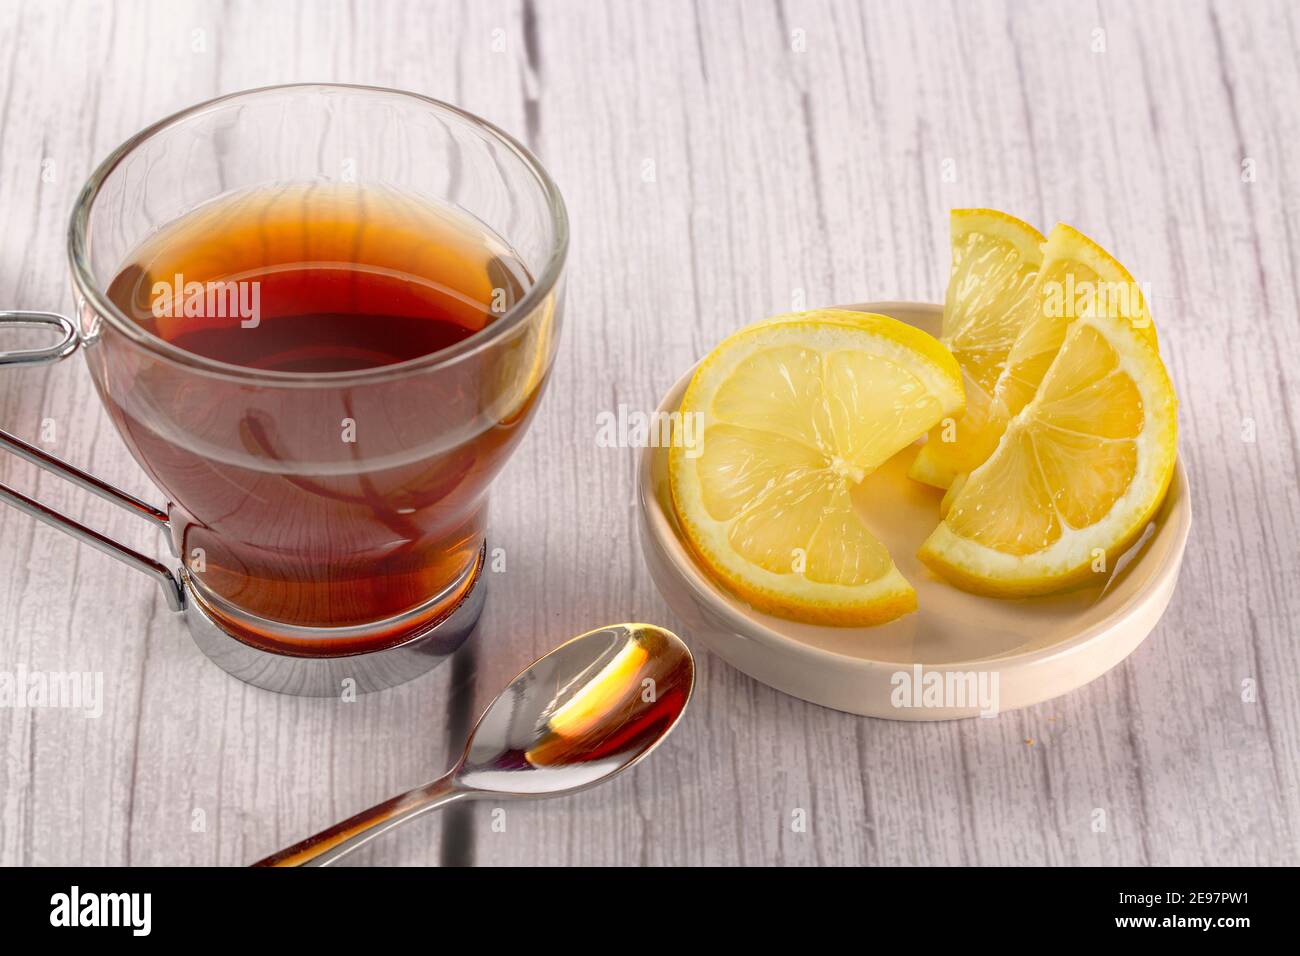 infusion dans le verre sur table en bois dans un fond clair et blanc, des tranches de citron et une cuillère à café. concept temps de thé Banque D'Images